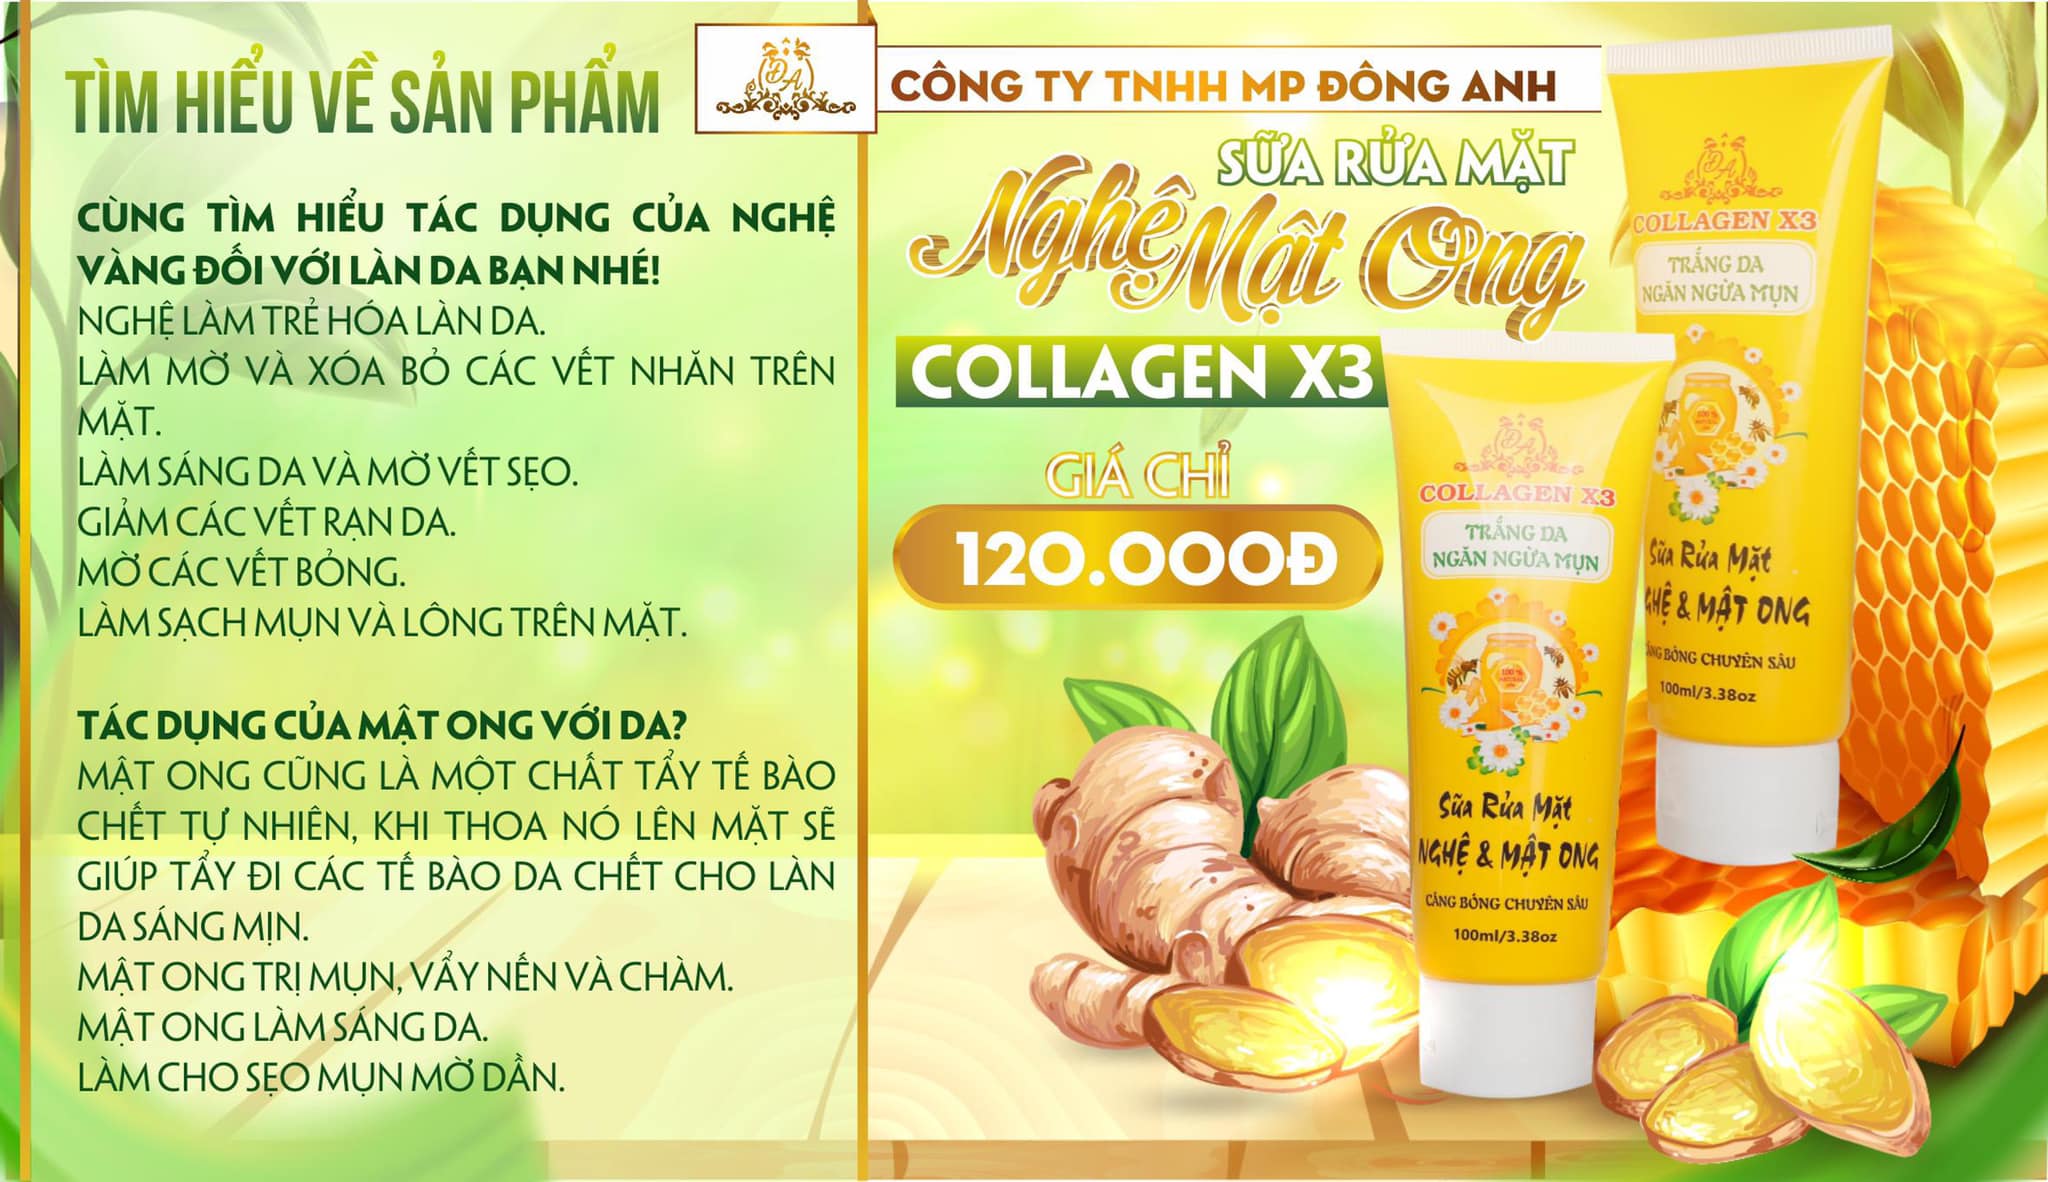 Sửa rửa mặt nghệ mật ong Collagen x3